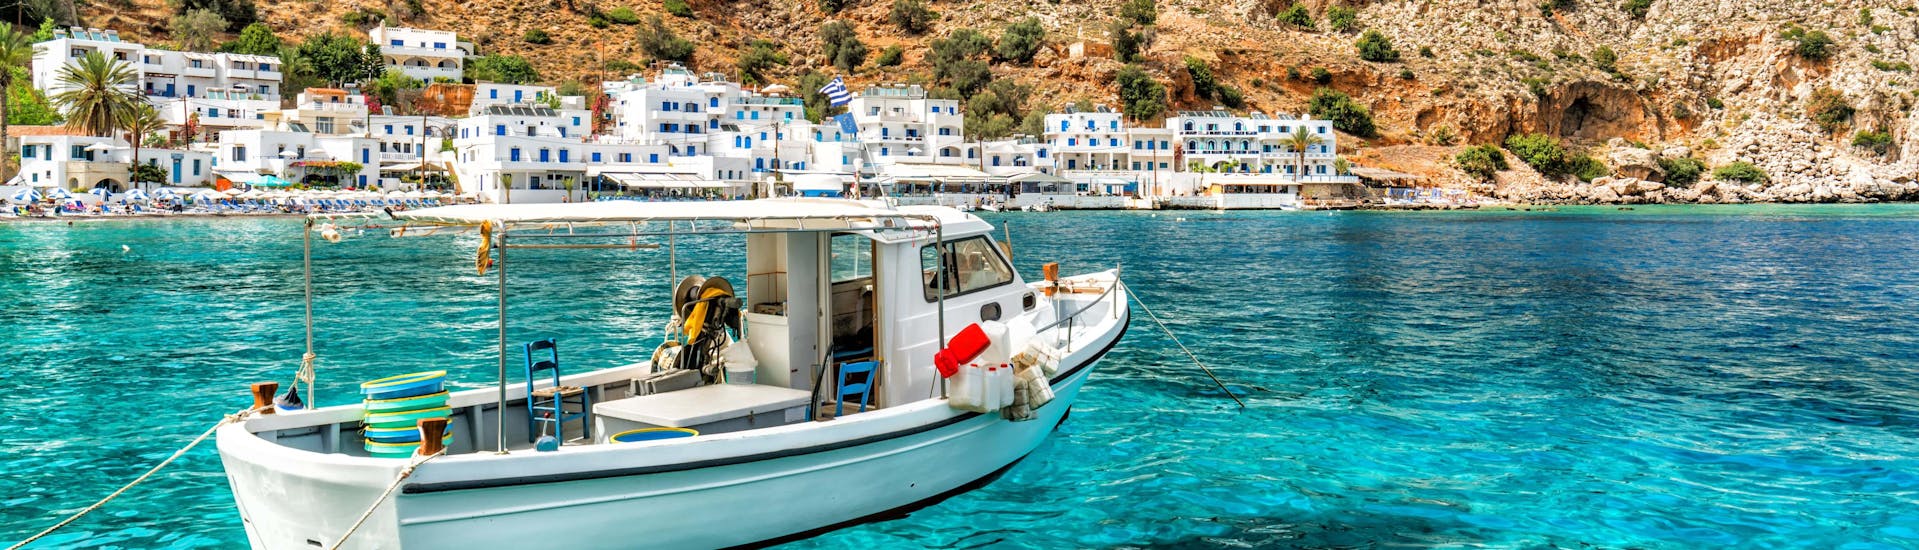 Un barco en las aguas cristalinas frente a la costa de Creta, un destino popular para las excursiones en barco. 